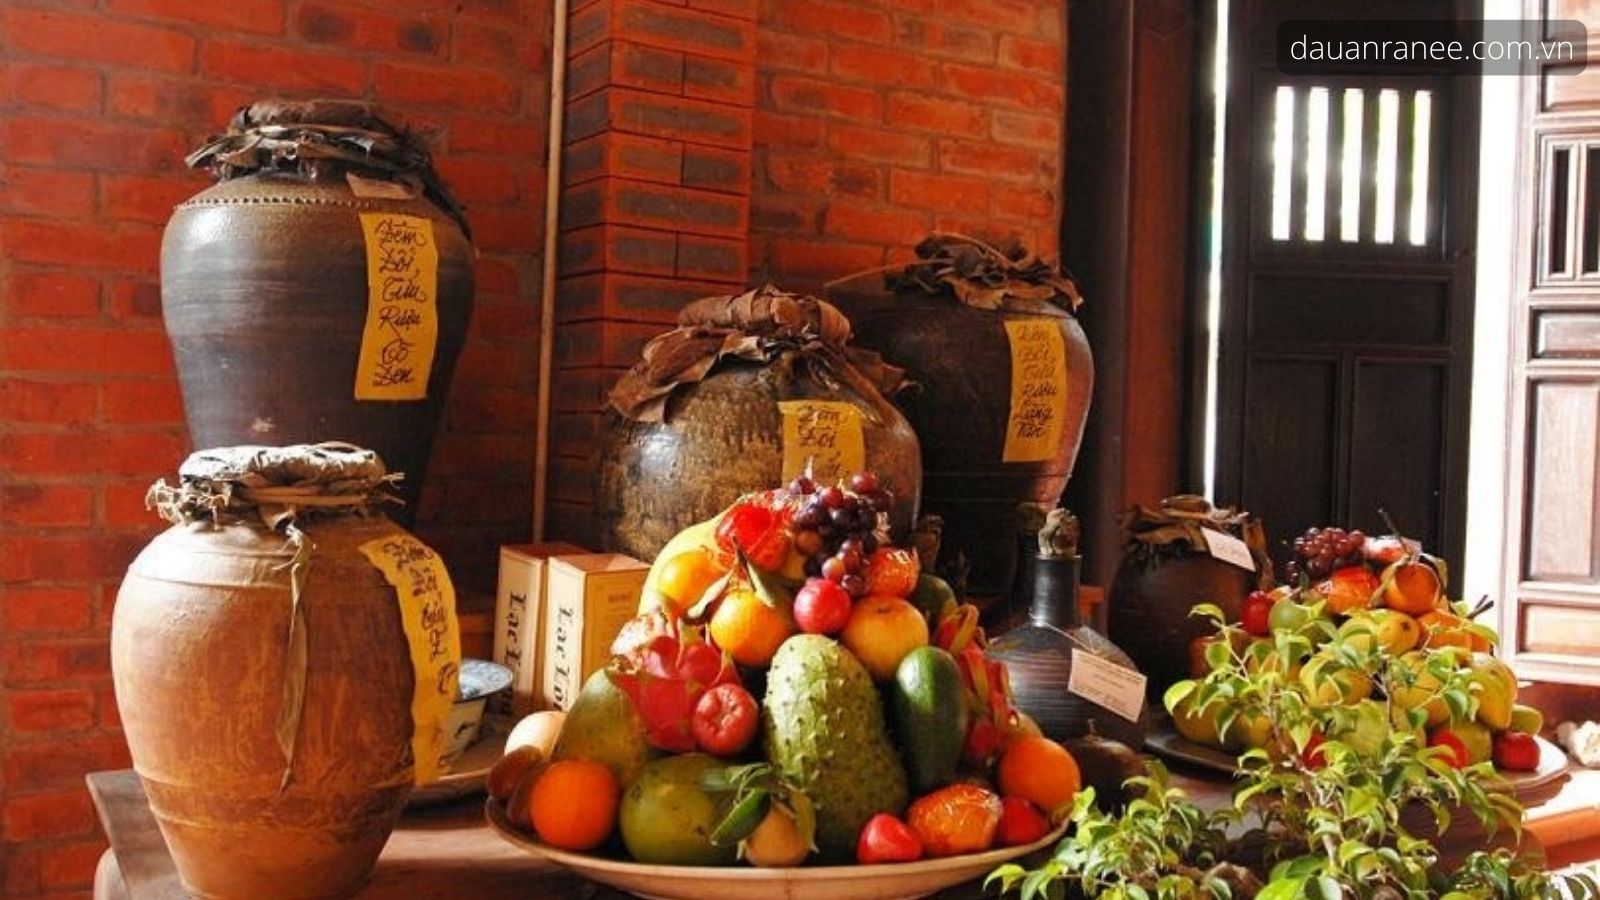 Đặc sản Hà Nam Vọc Long Tửu nổi tiếng của Hà Nam - Rượu ngon làm quà khi nhắc đến Hà Nam